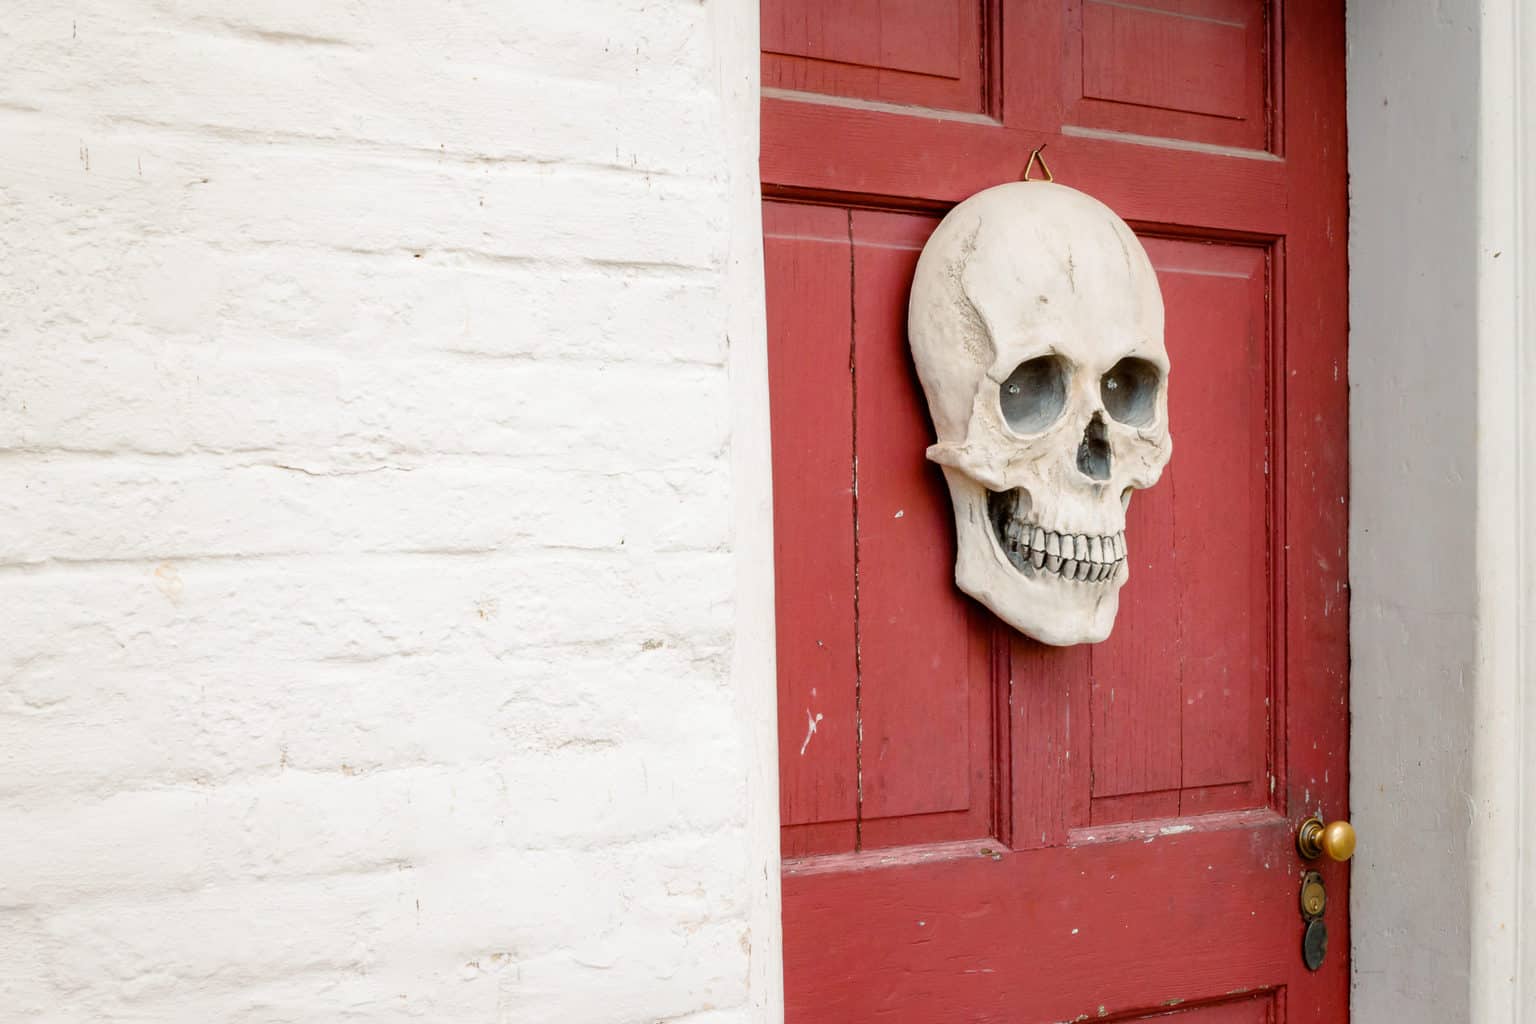 Skull displayed in front of a red door